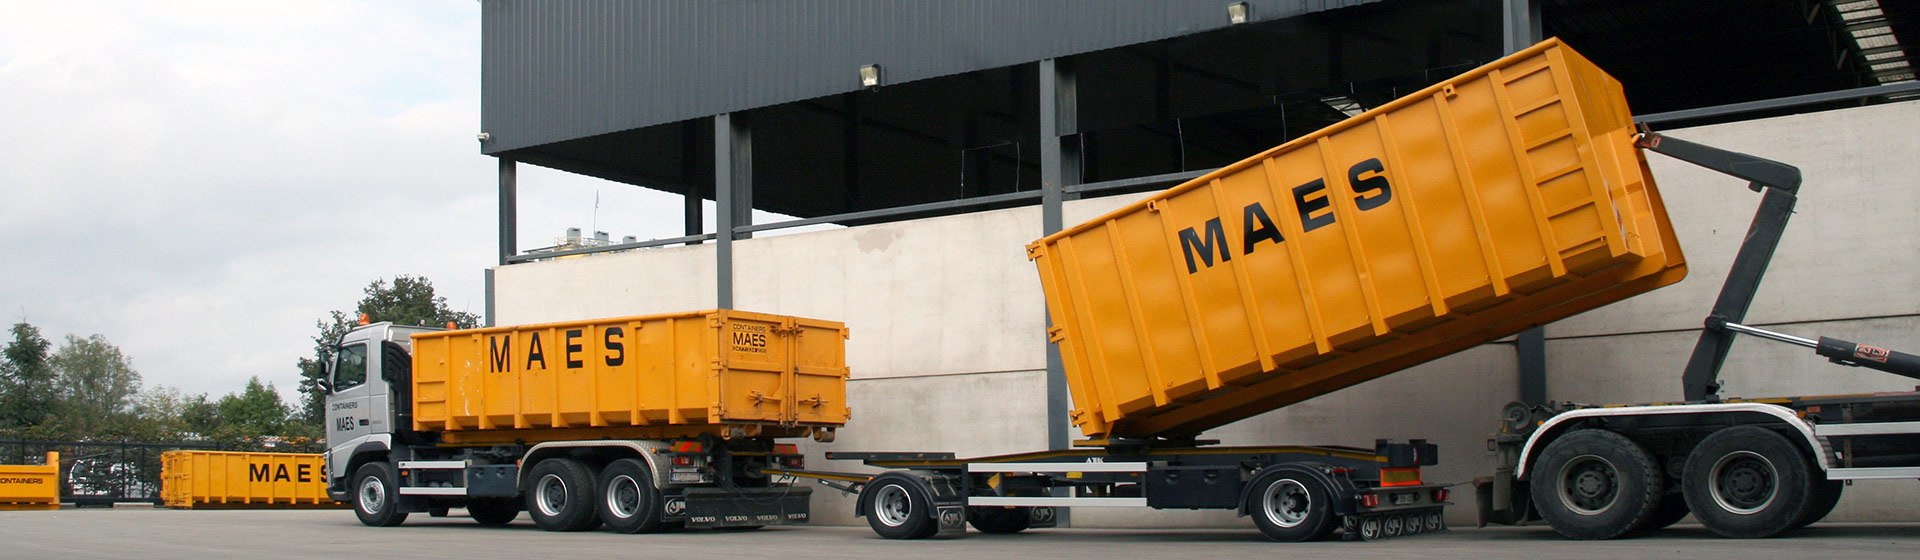 containers-demo-vrachtwagen-bb